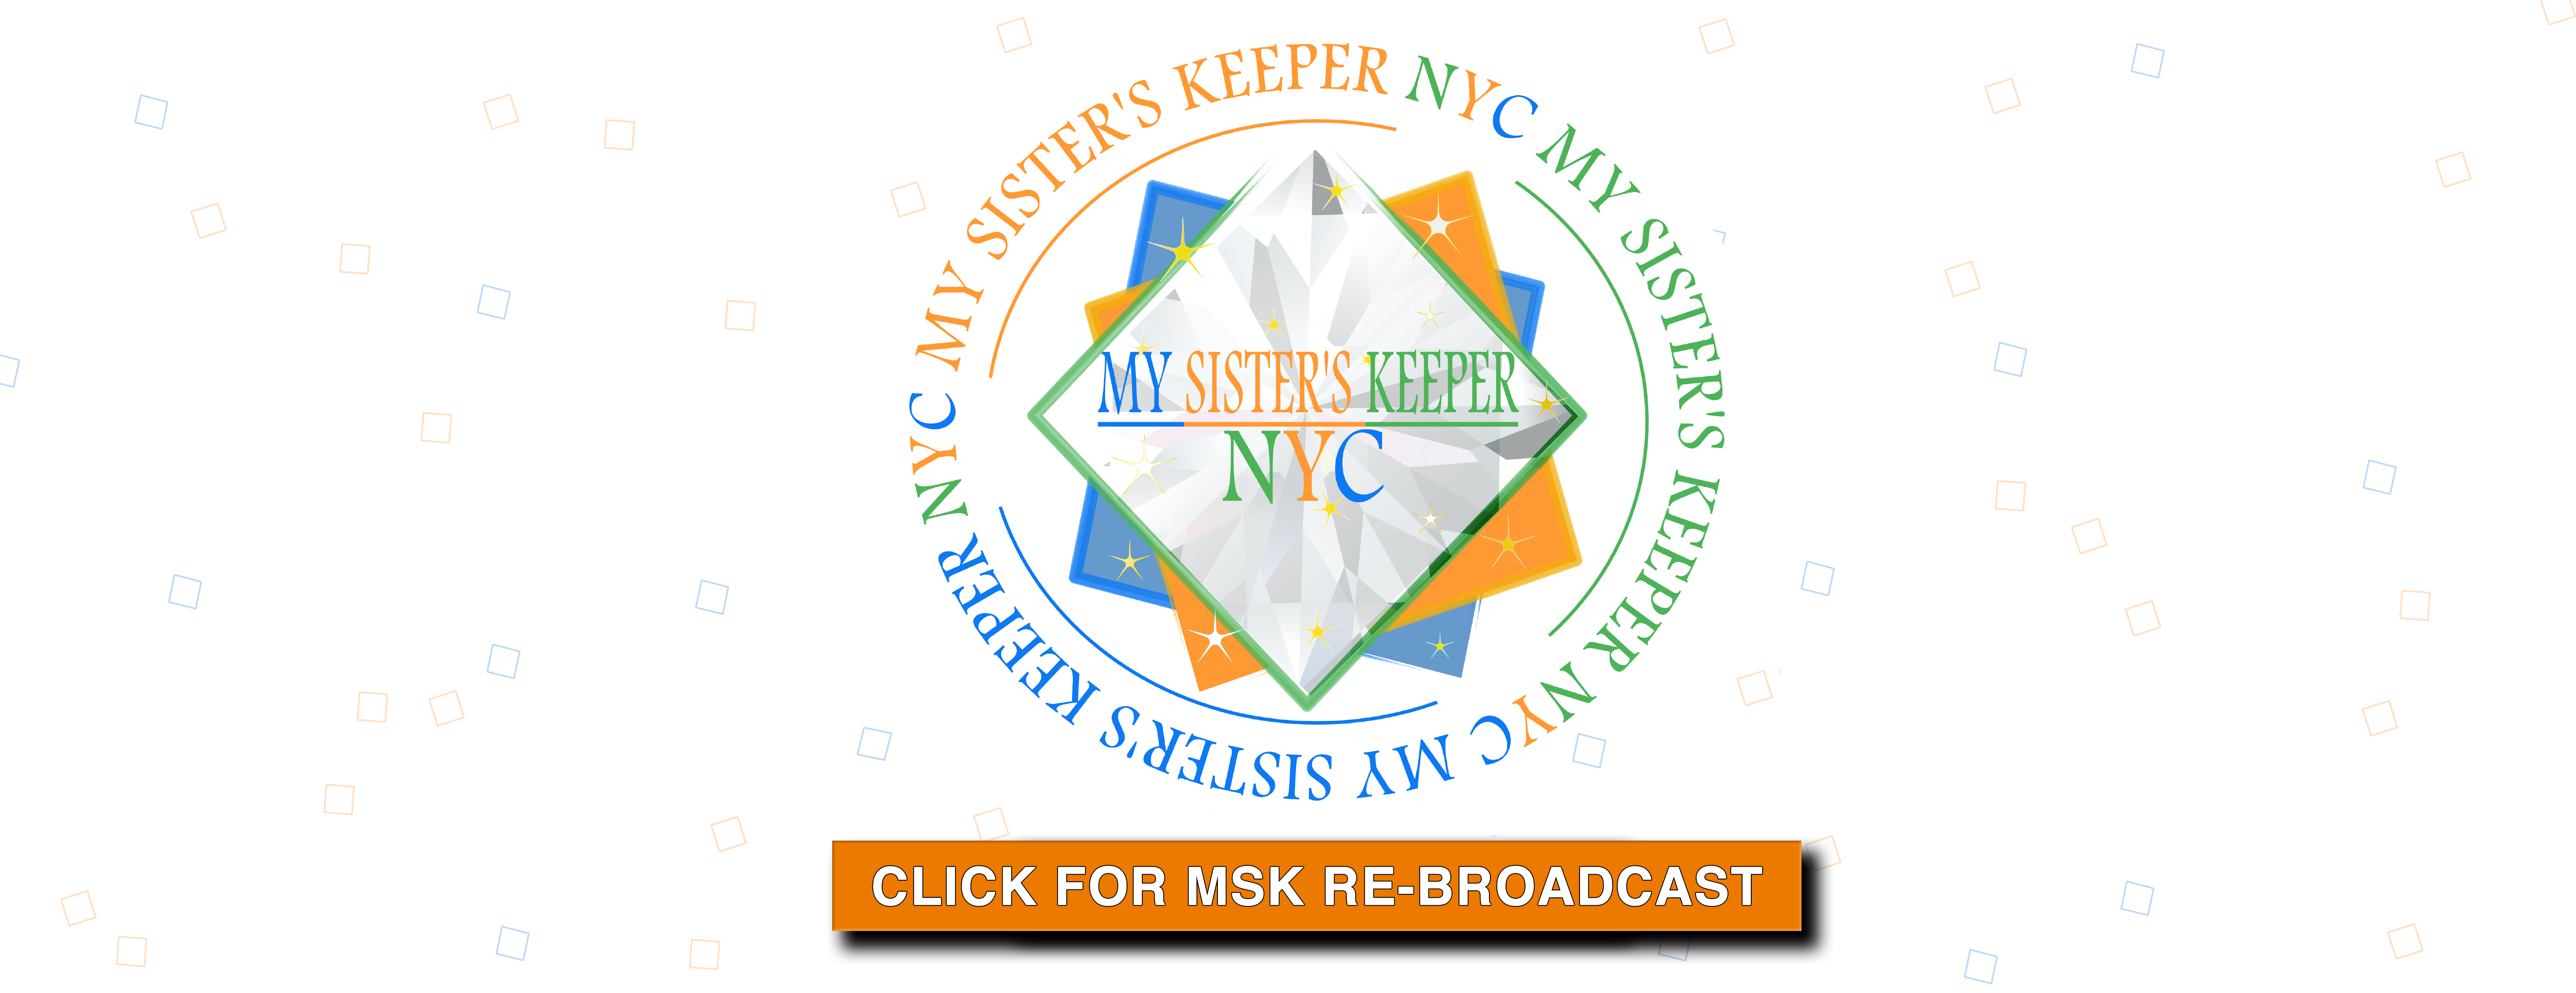 msk header logo banner